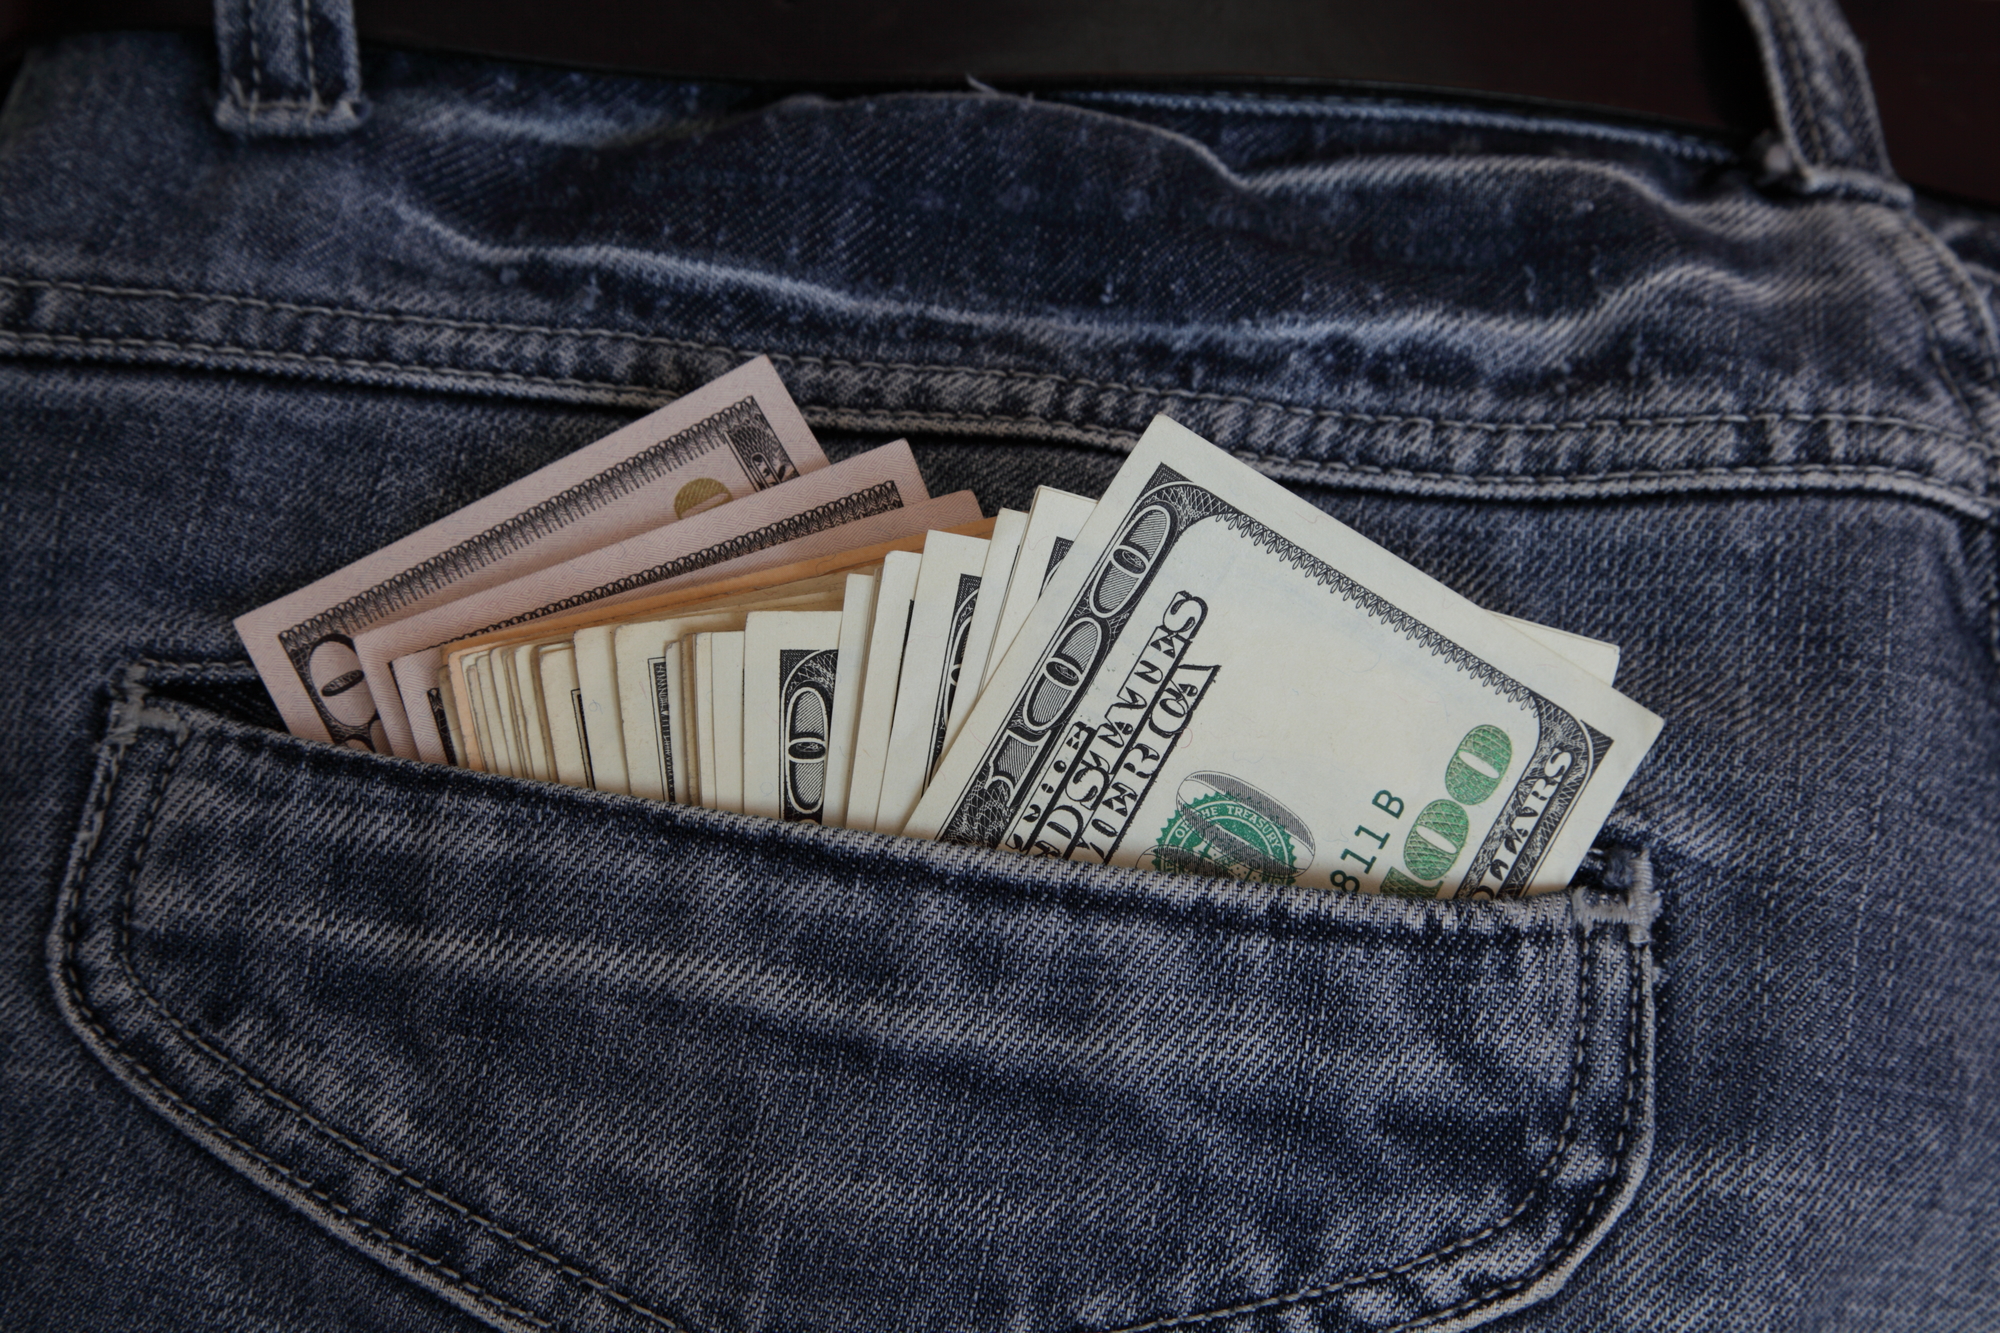 Back pocket full of $100 bills